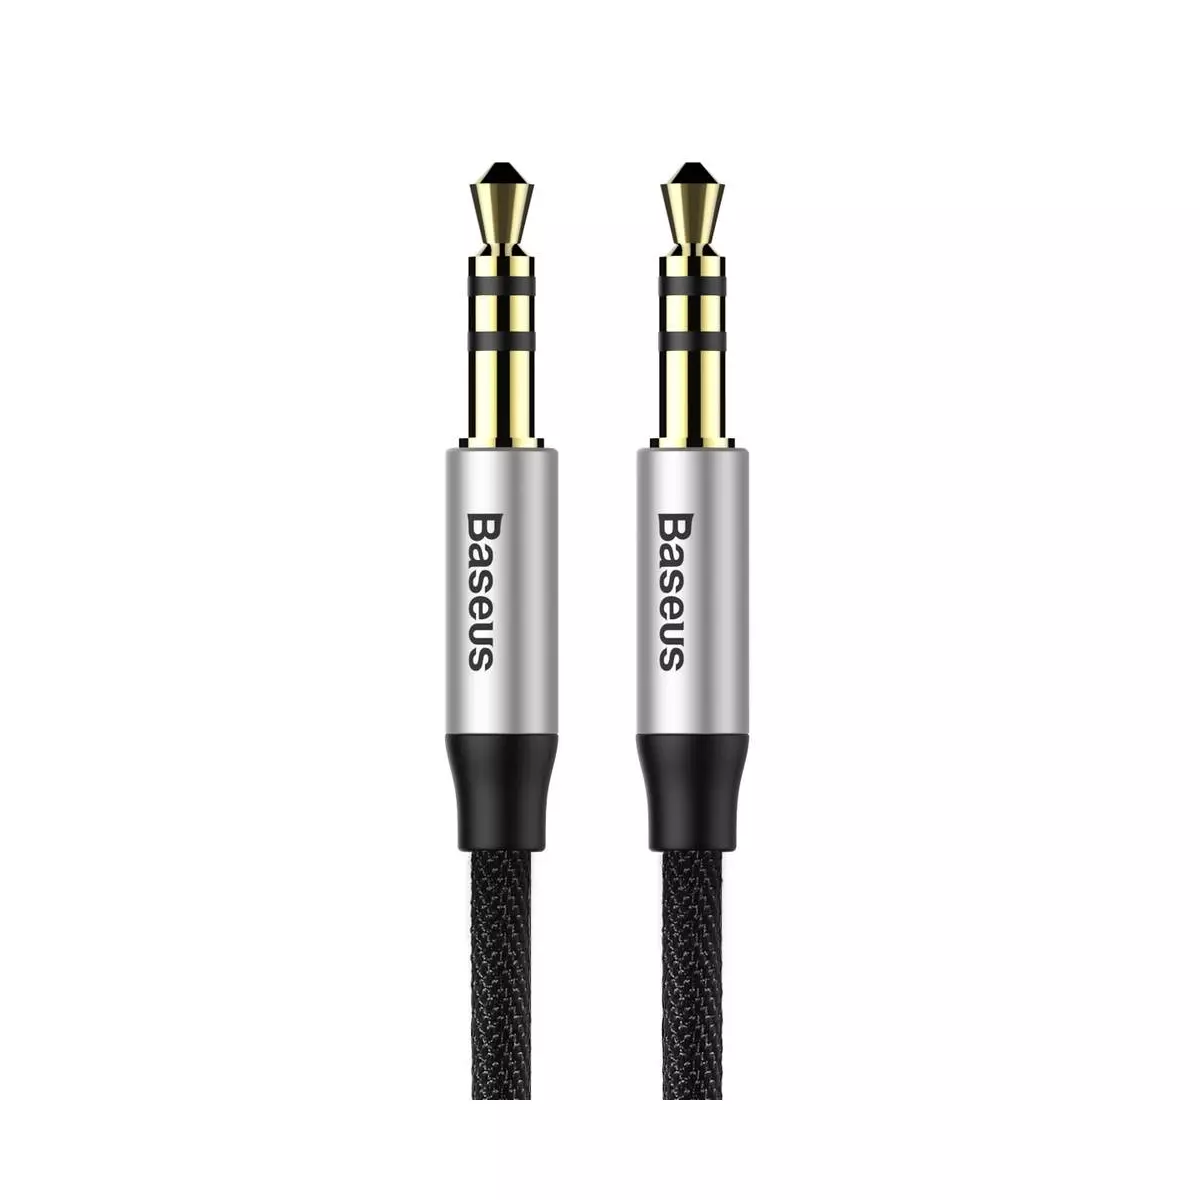 Kép 2/9 - Baseus Audio kábel, Yiven M30 AUX 1m, ezüst/fekete (CAM30-BS1)